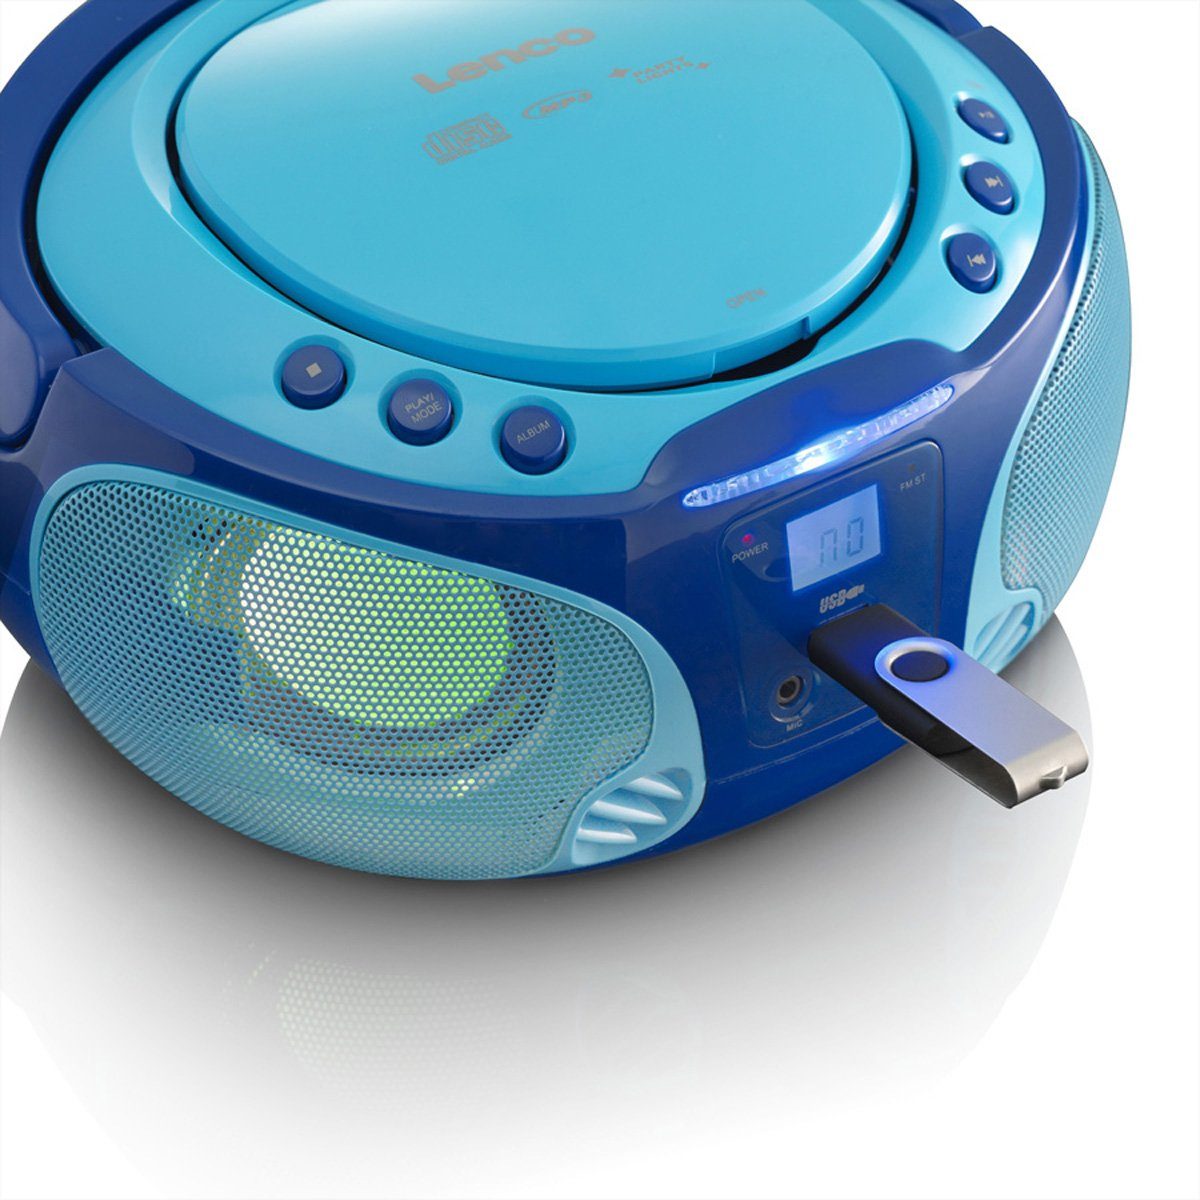 USB, Mit MP3, und USB CD, Lichteffekt, m. Lenco Mikro Lichteffekten MP3, CD-Radio Boombox, SCD-650BU